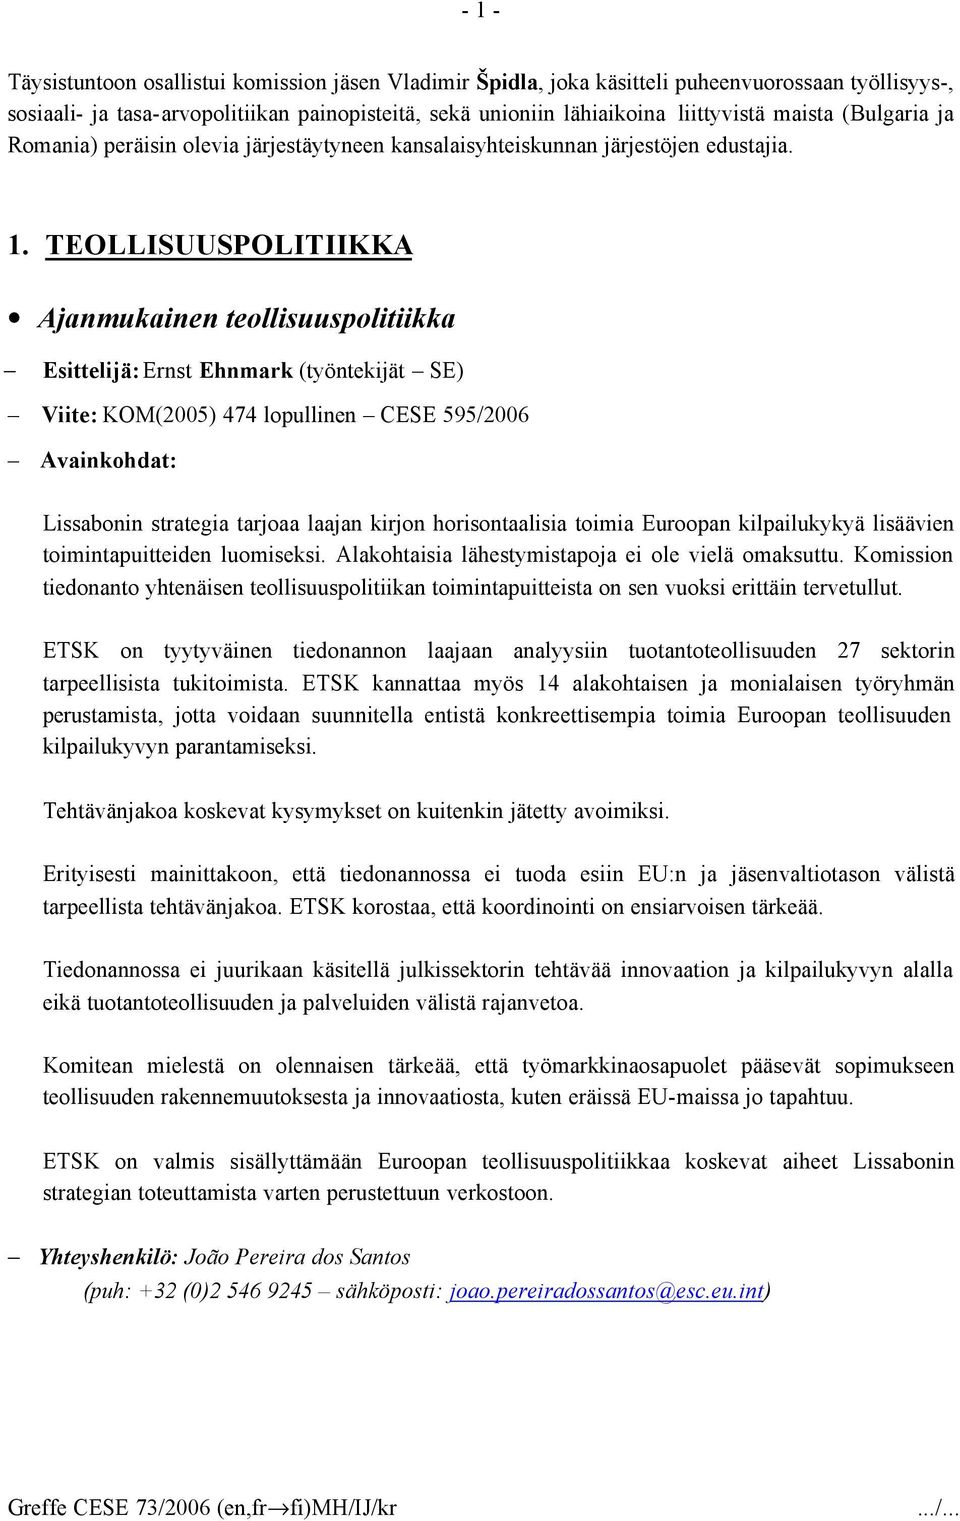 TEOLLISUUSPOLITIIKKA Ajanmukainen teollisuuspolitiikka Esittelijä: Ernst Ehnmark (työntekijät SE) Viite: KOM(2005) 474 lopullinen CESE 595/2006 Avainkohdat: Lissabonin strategia tarjoaa laajan kirjon